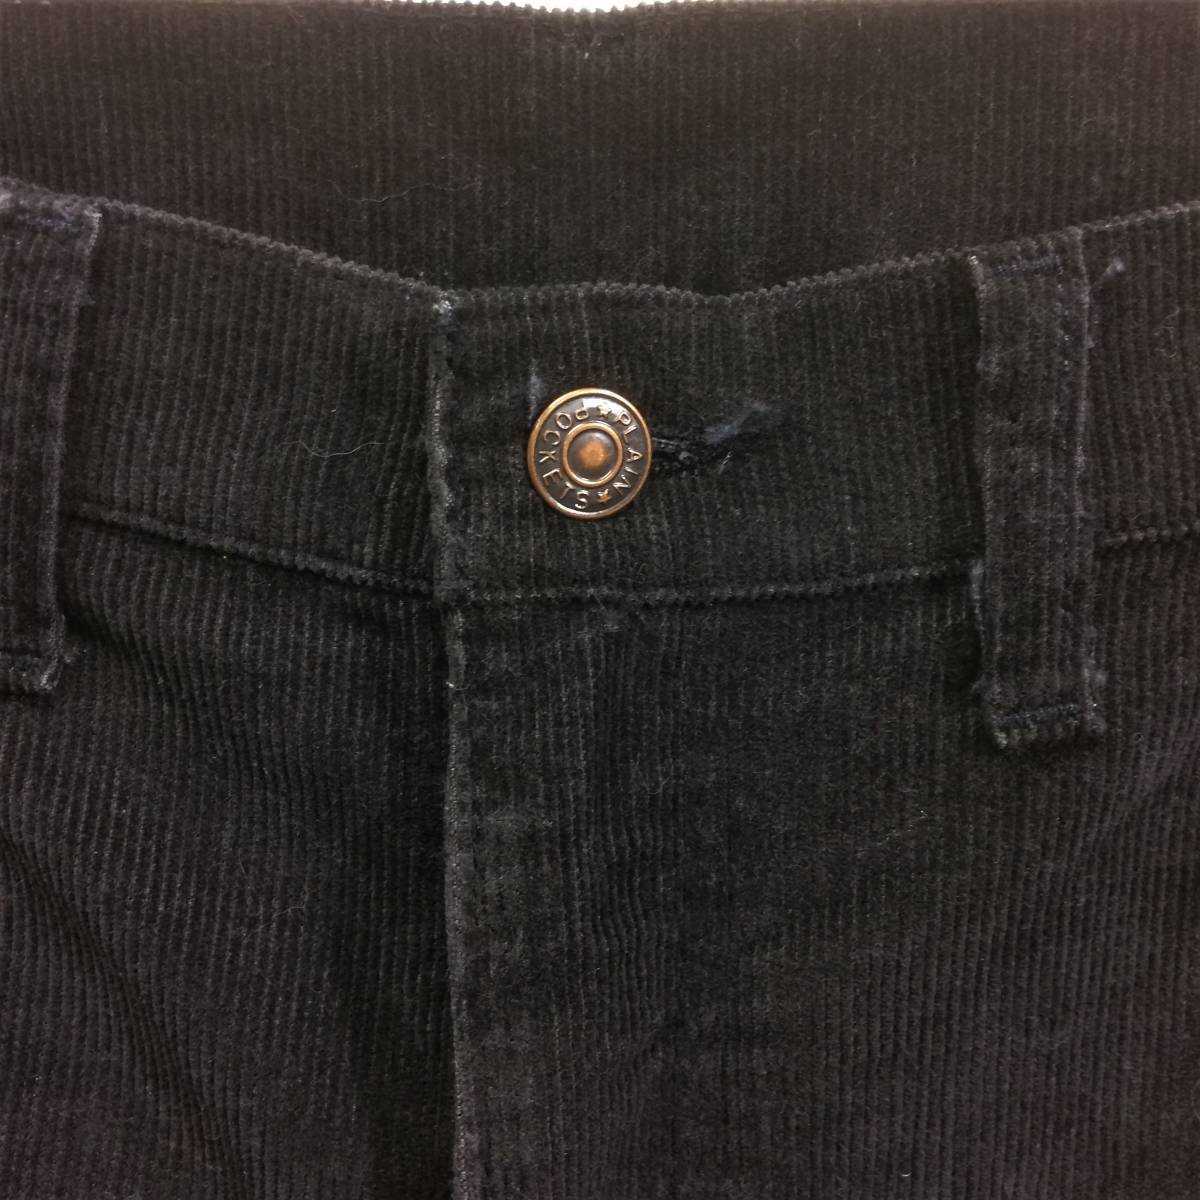 JCPenney Plain Pockets コーデュロイ ジーンズ ブラック 黒 black cords 38x30 80's JCペニー レア ブラックジーンズ jeans vintage _画像2